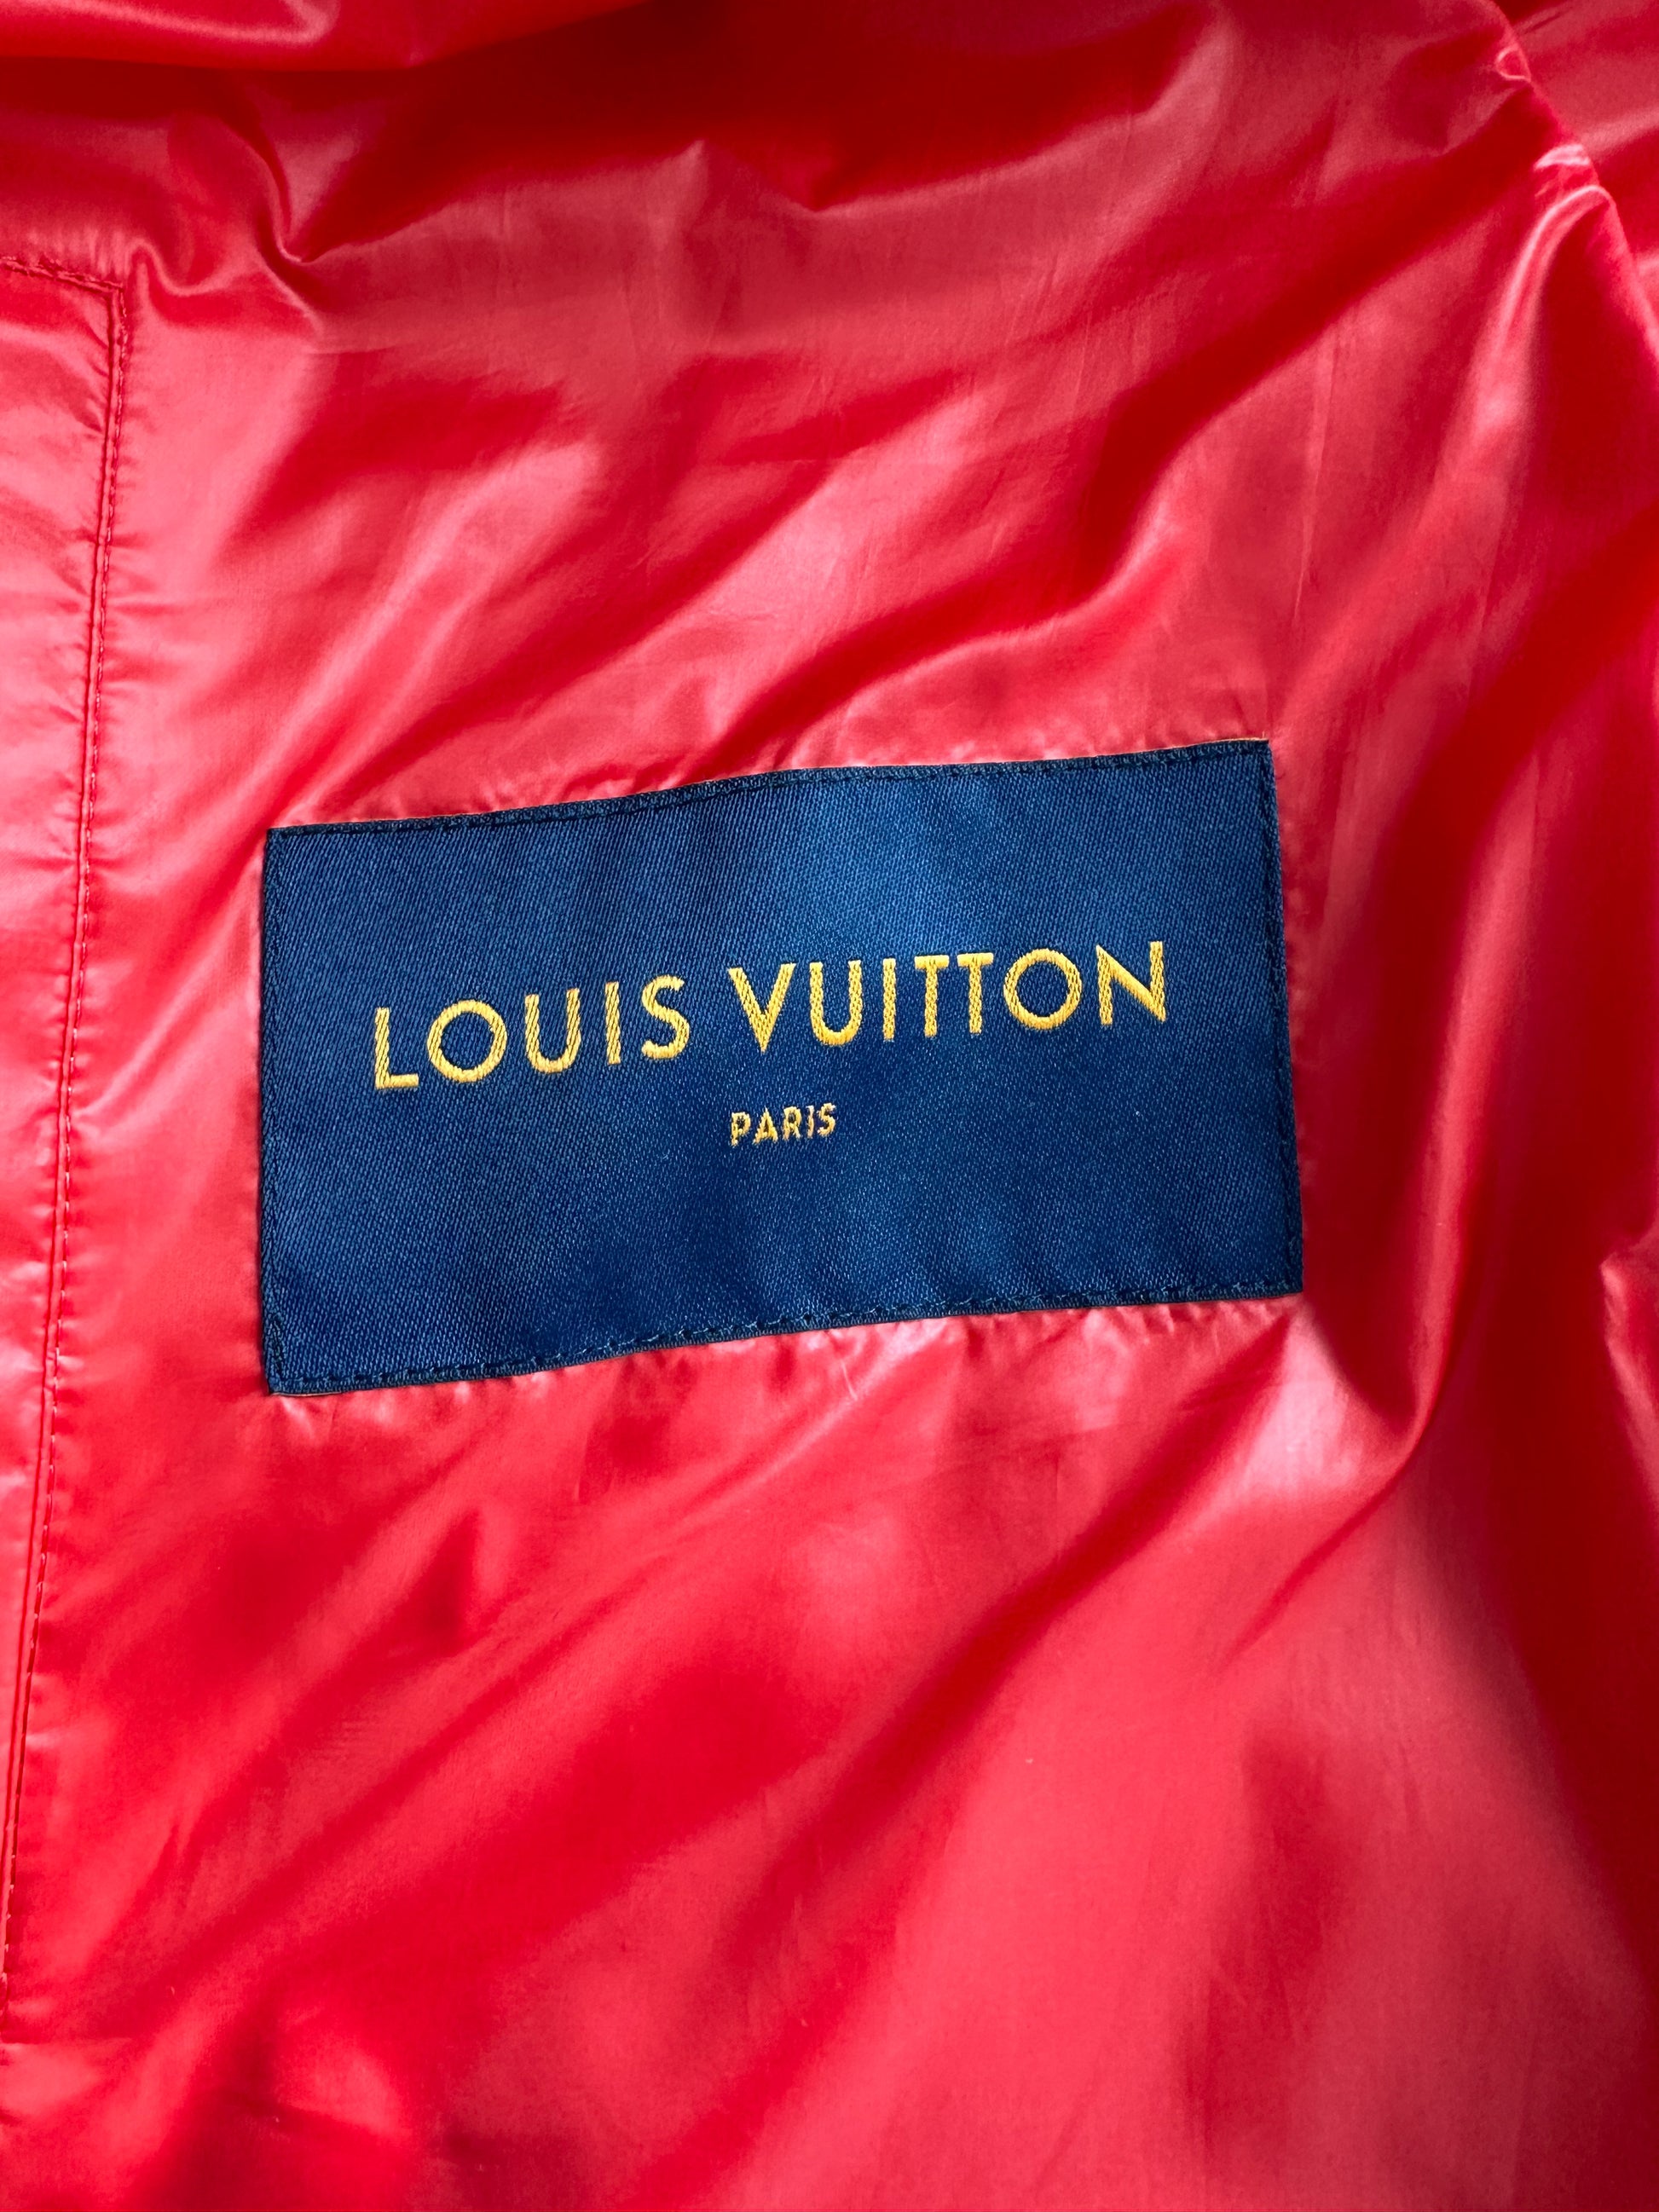 Vest Louis Vuitton Outlet, SAVE 57%.